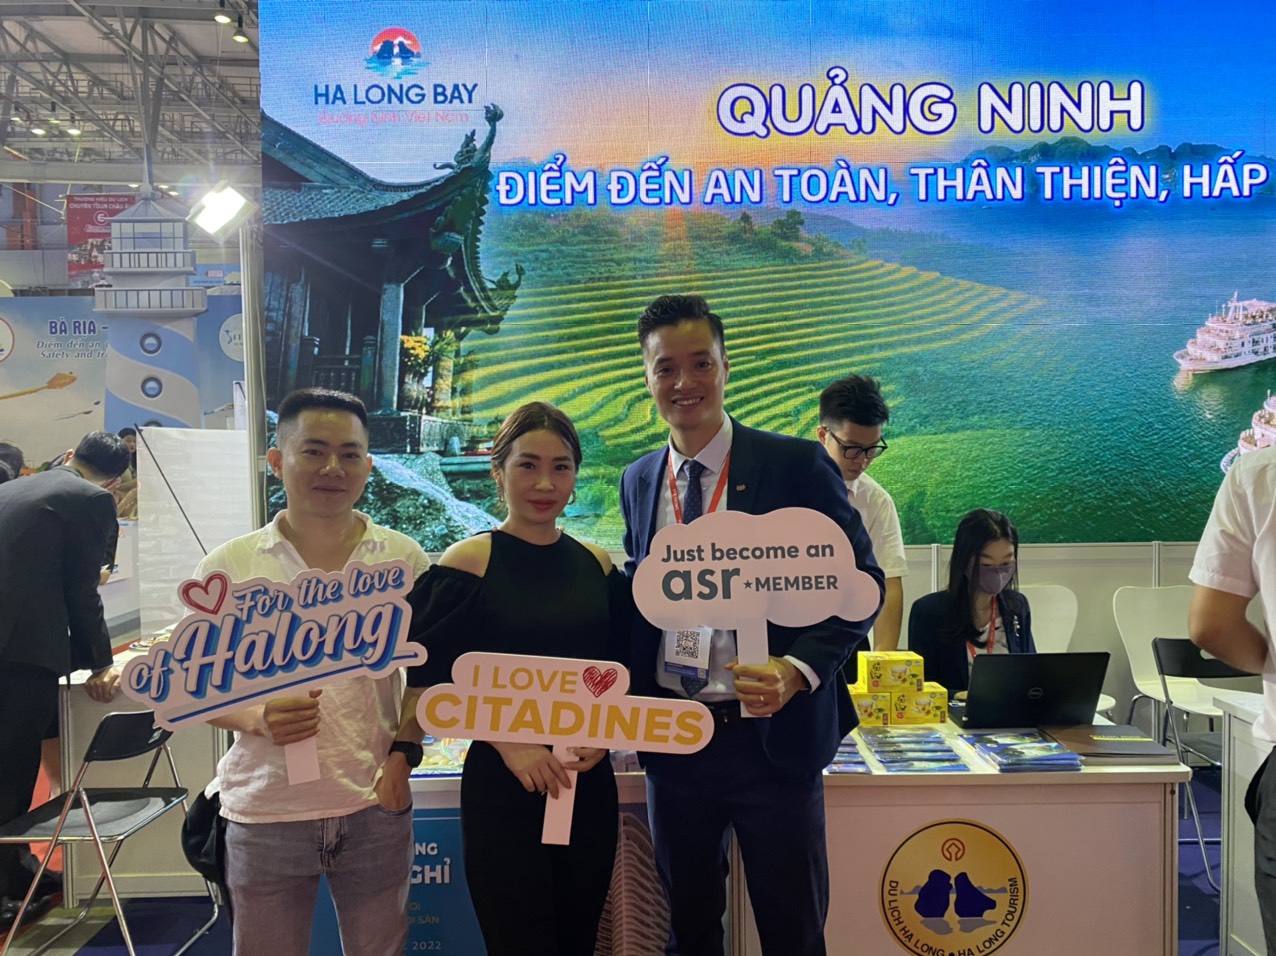 Du lịch Quảng Ninh tham gia Hội chợ du lịch quốc tế Thành phố Hồ Chí Minh ITE HCMC 2022